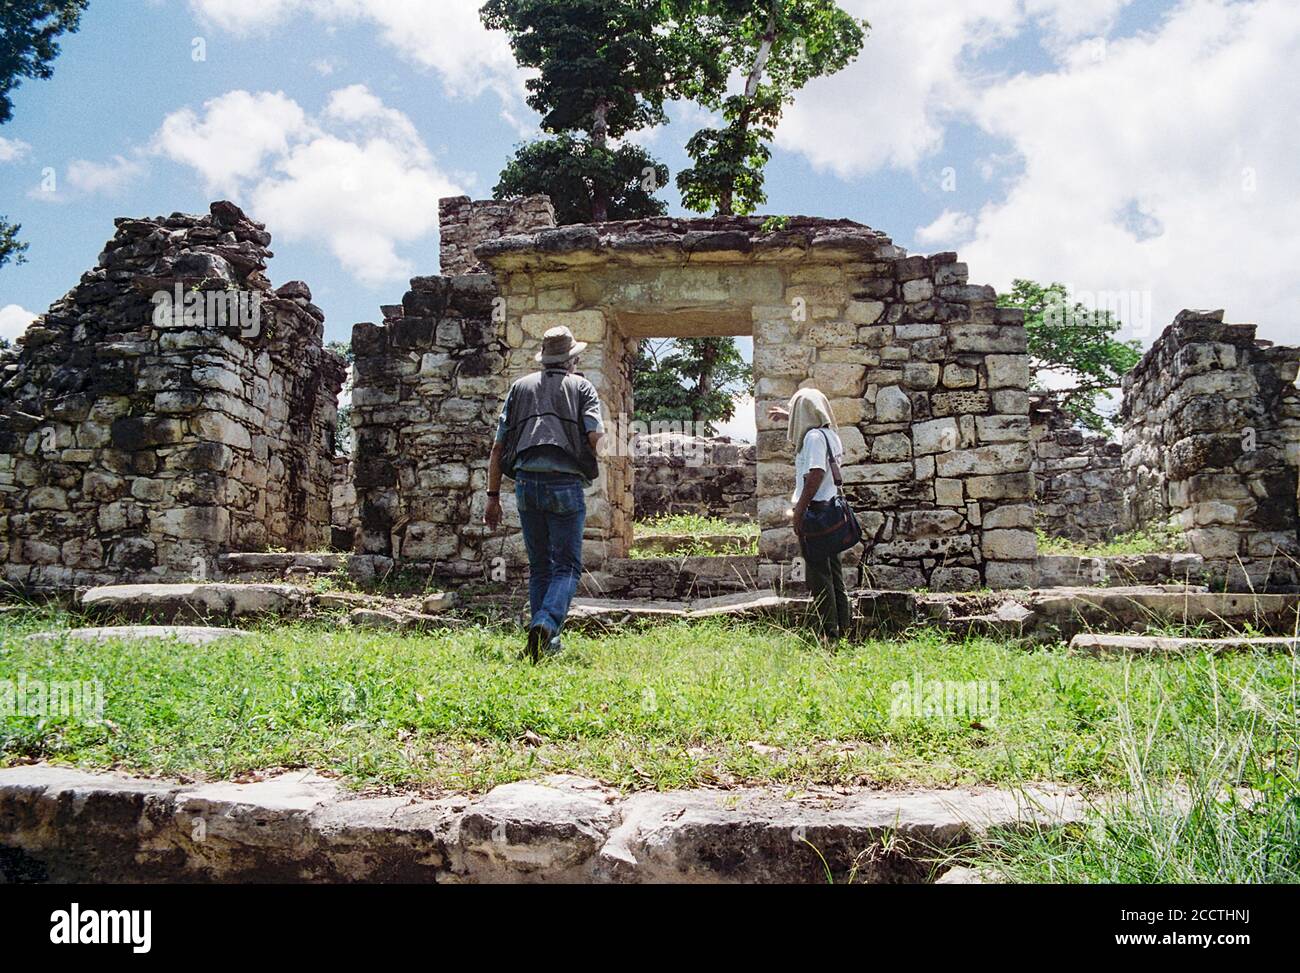 Ein lokaler Guide erklärt diese Struktur in West Acropolis. Yaxchilan Maya Ruinen; Chiapas, Mexiko. Vintage Film Bild - ca. 1990. Stockfoto